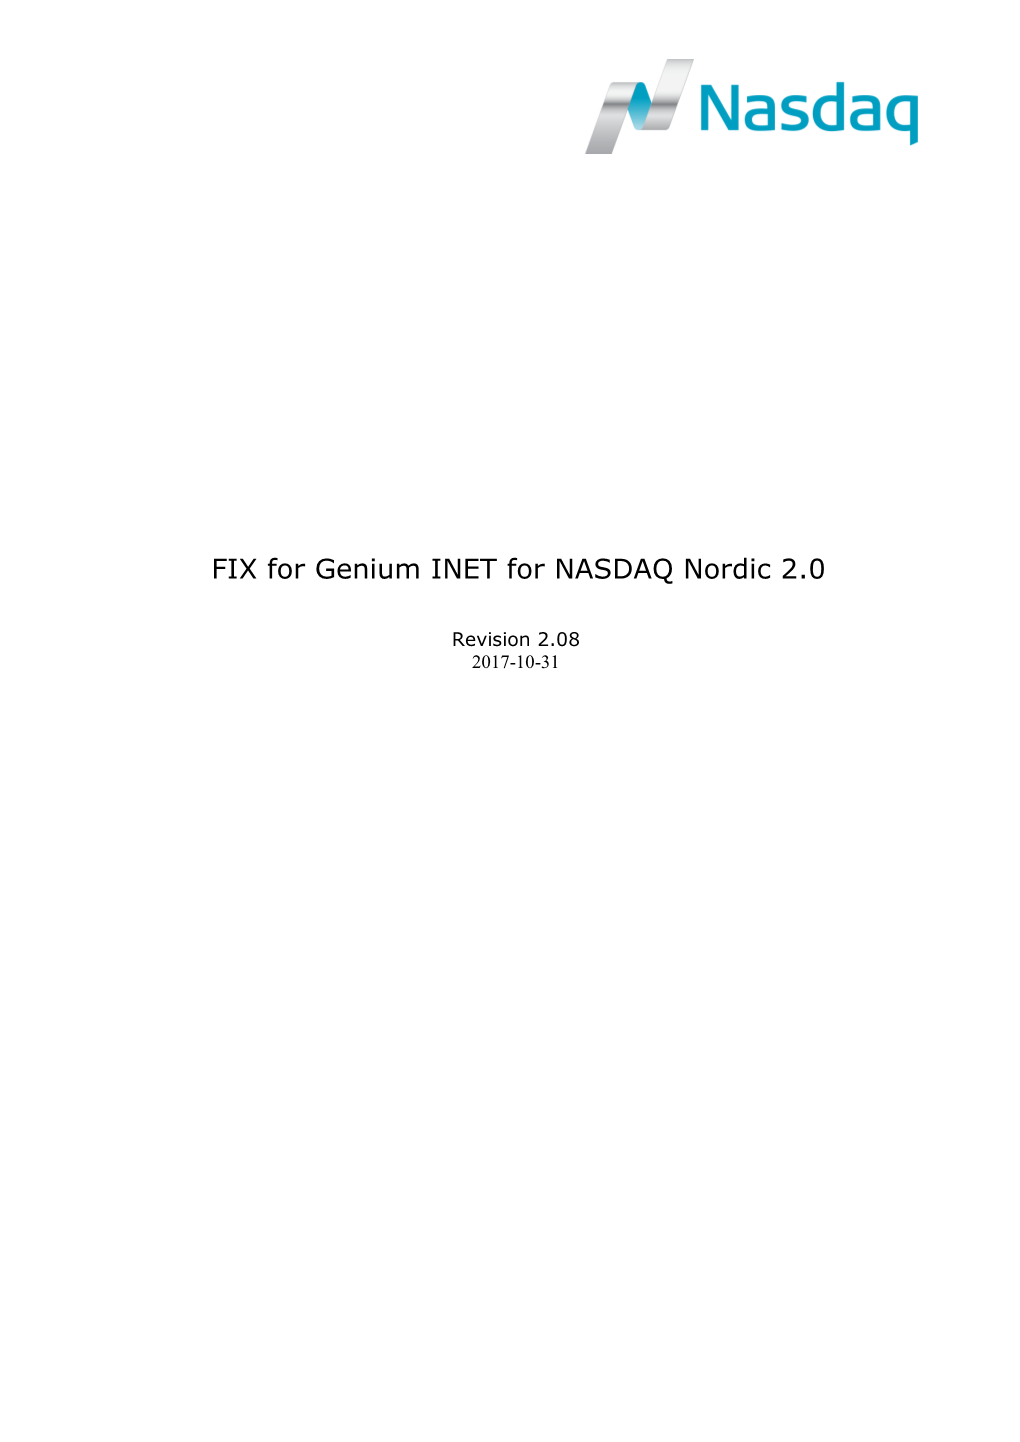 FIX for Genium INET for NASDAQ Nordic 2.0